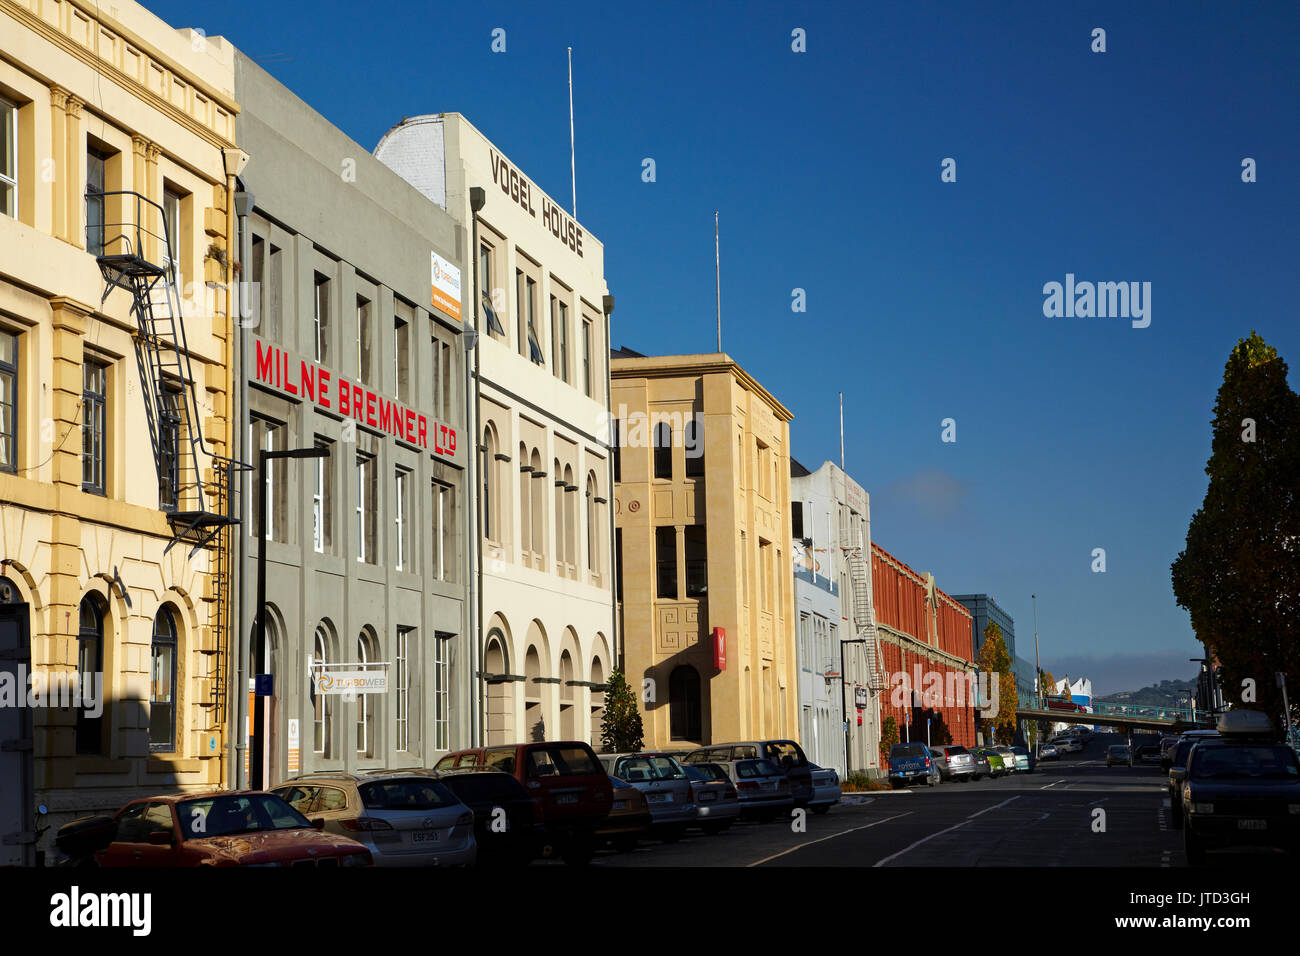 Bâtiments historiques, Vogel Street, Dunedin, île du Sud, Nouvelle-Zélande Banque D'Images